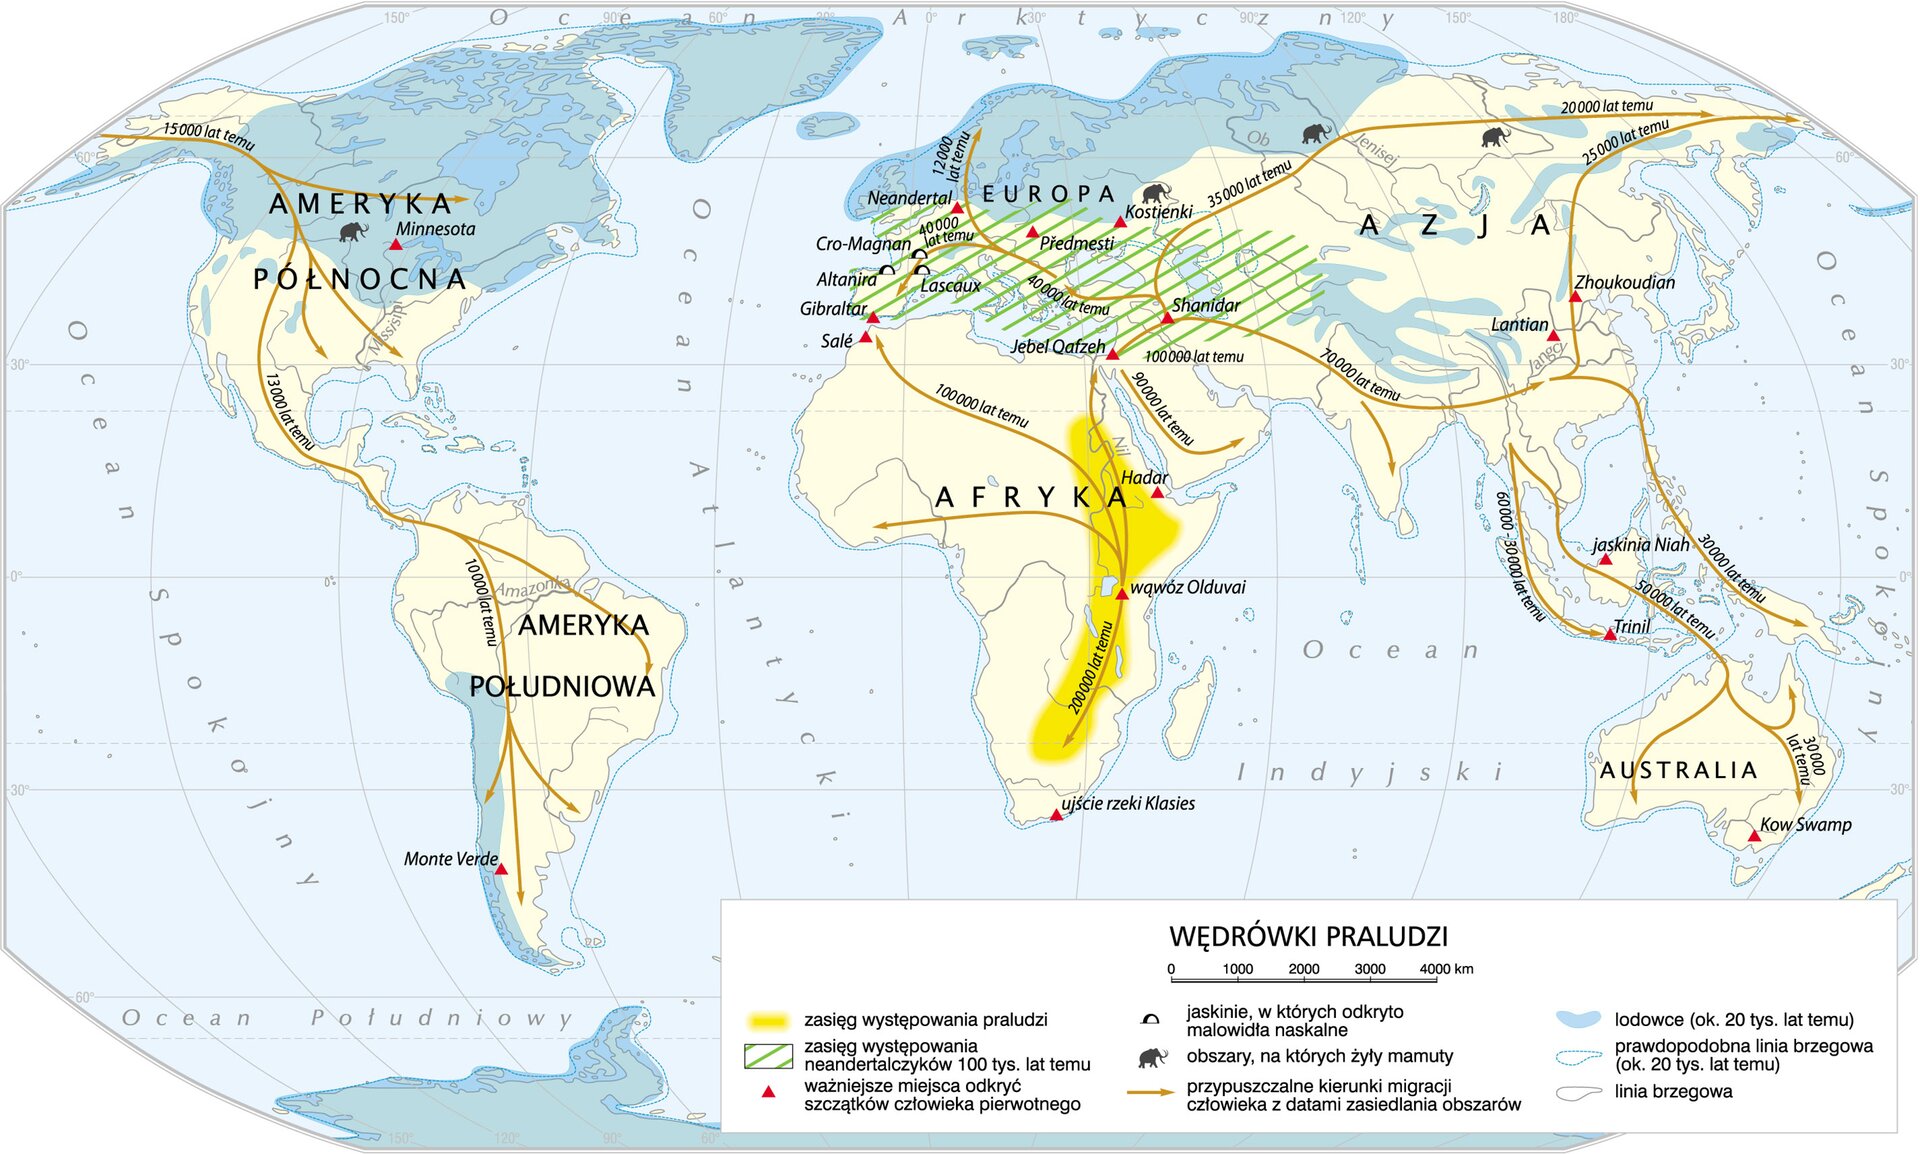 Mapa świata pokazująca jakimi drogami migrowali ludzie z południa Afryki na inne kontynenty. Kontynenty: Ameryka Północna, Ameryka Południowa, Afryka, Europa, Azja, Australia. Zasięg występowania praludzi zaznaczono na żółto, w pasie od dorzecza rzeki Nil po północne rejony współczesnej Republiki Południowej Afryki. Zaznaczono miejsca odkryć szkieletów człowieka pierwotnego- Monte Verde, Minnesota, Sale, Gibraltar, Hadar, wąwóz Olduvai, ujście rzeki Klasies, Kow Swamp, Jebef Qefzeh, Lantian, Zhaukaudian, Piedmesti, Kostienki, Neandertal. Jaskinie z odkrytymi malowidłami naskalnymi- Cro‑Magnon, Altamira, Lascaux. Okres zasiedlania: Afryka- 200 tysięcy lat temu, Europa i Azja- od 100 tysięcy do 20 tysięcy lat temu. Australia- od 60 tysięcy do 30 tysięcy lat temu. Obie Ameryki- 15 tysięcy do 10 tysięcy lat temu.  